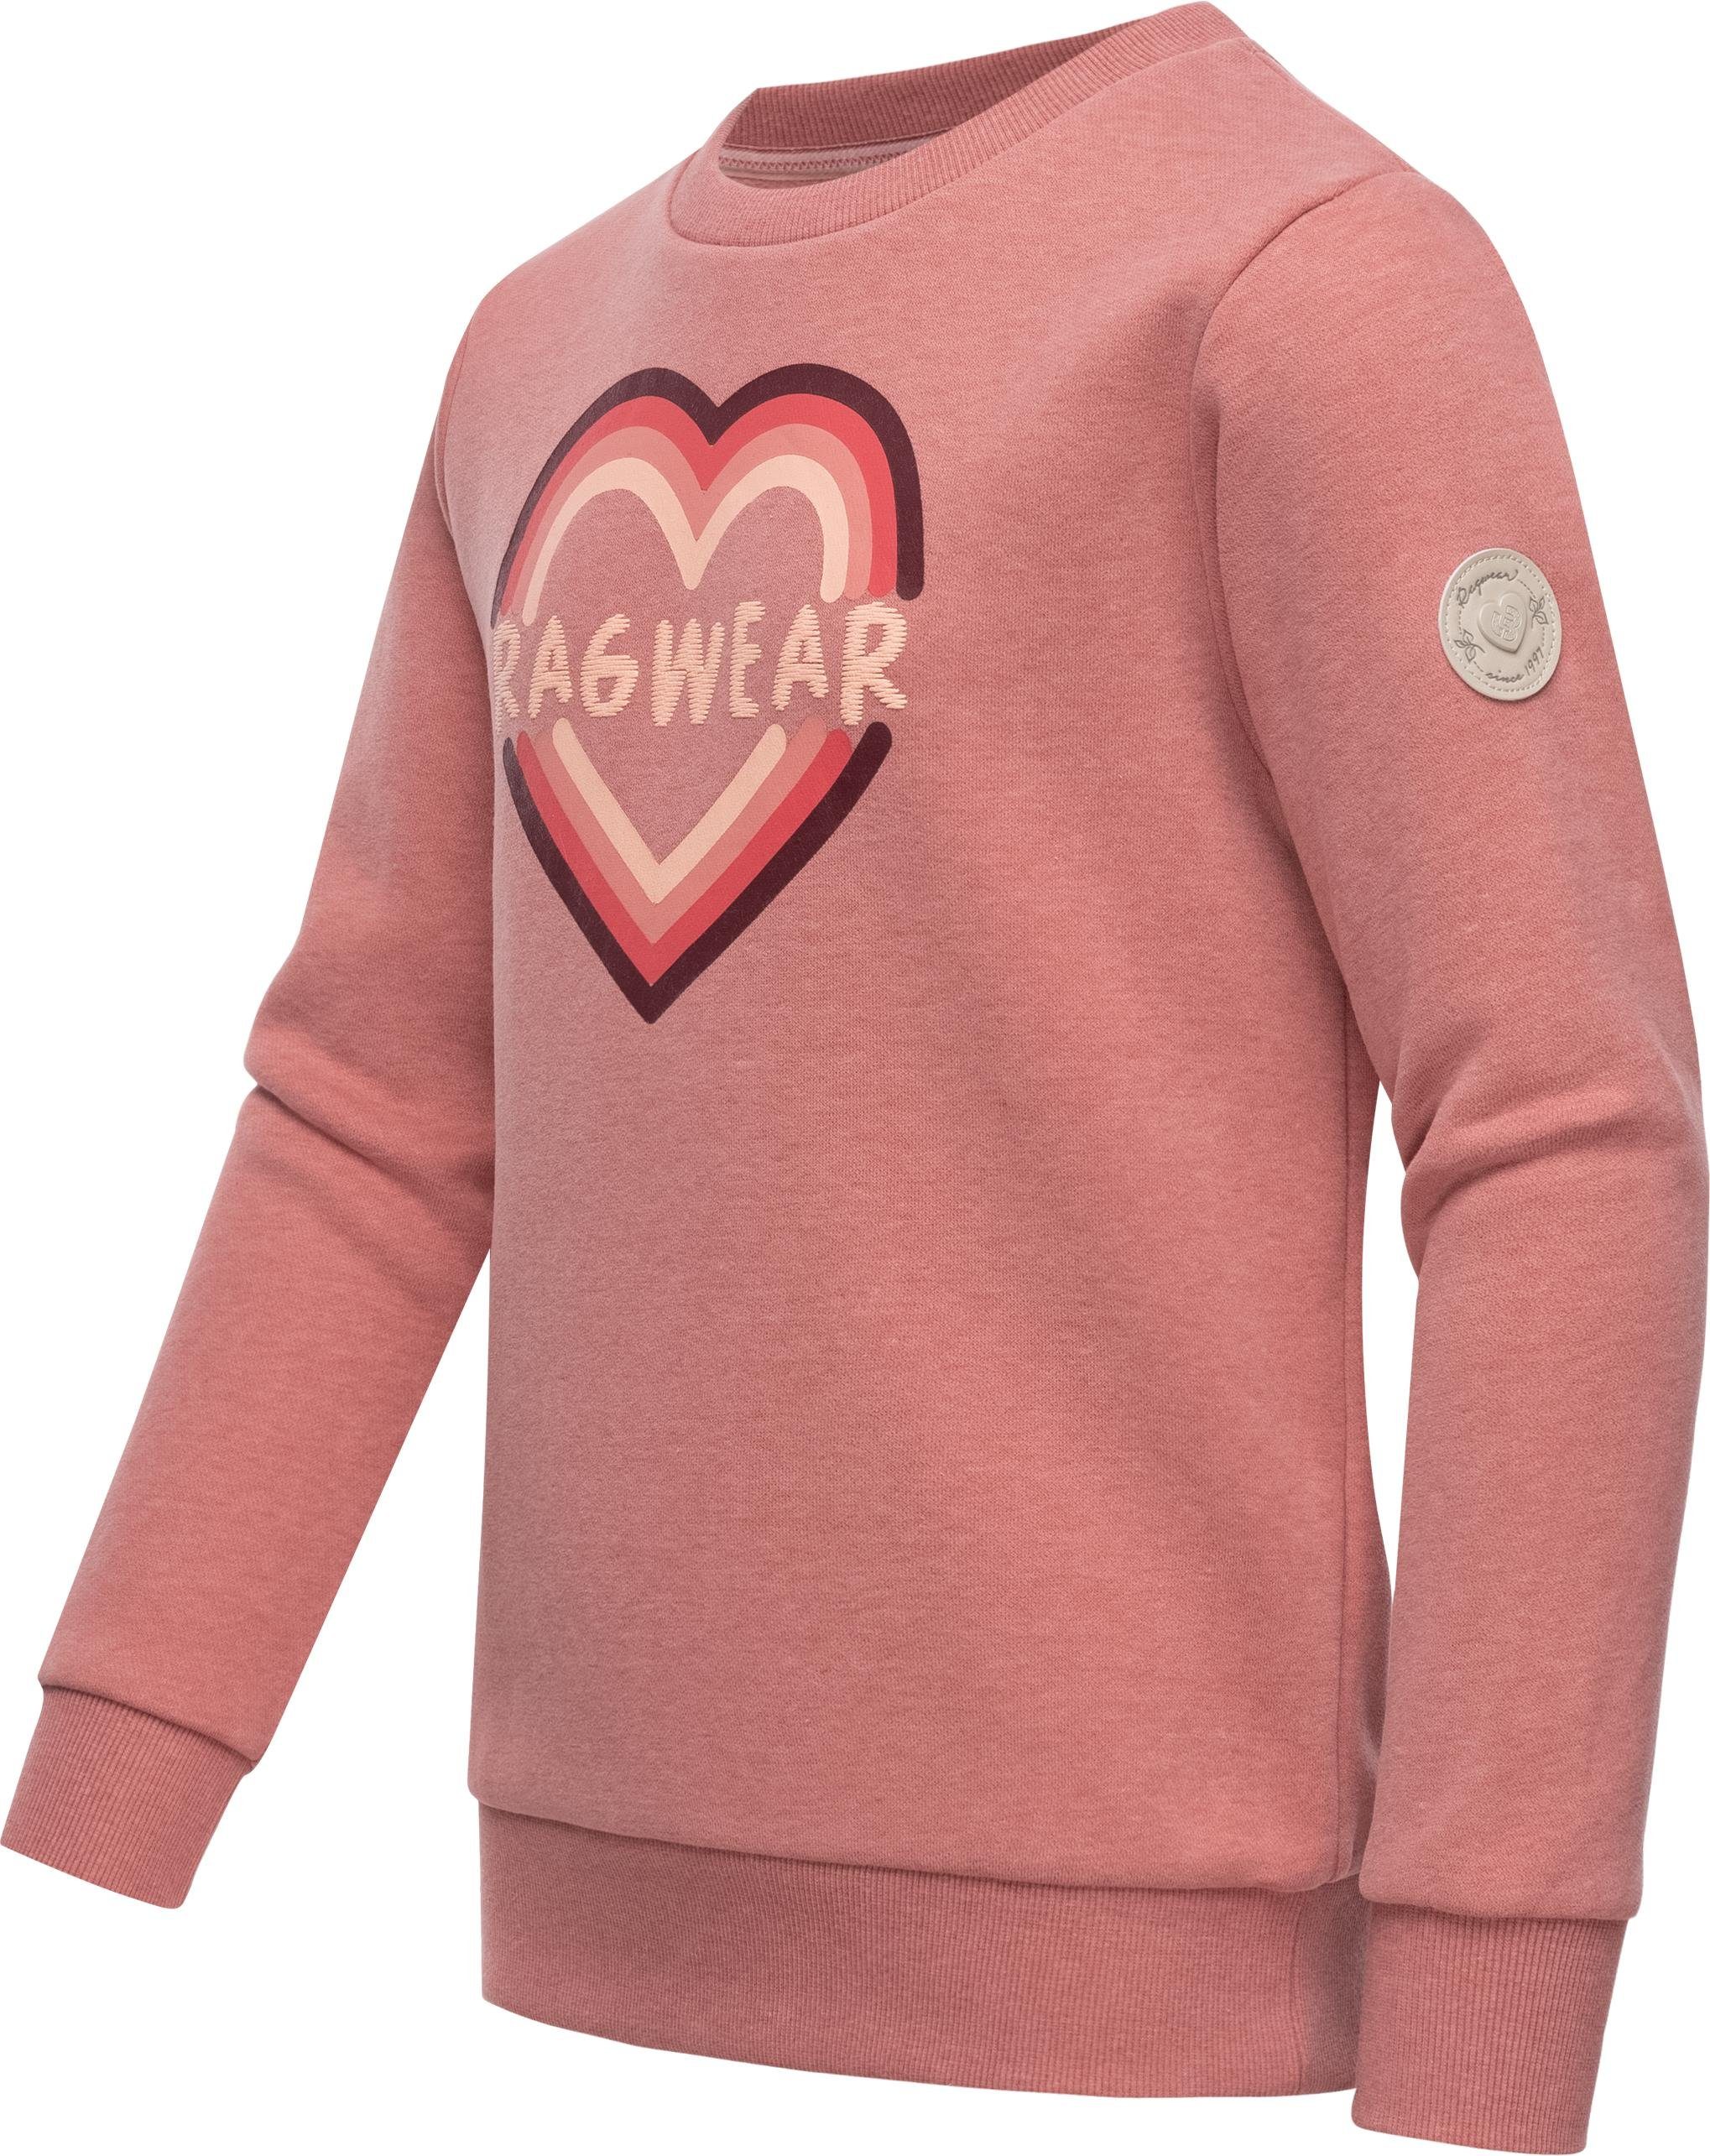 tragen, zu sich Sweatshirt schmiegt Print coolem an perfekt stylisches Print, Evka angenehm Sehr Mädchen Ragwear Sweater Logo mit